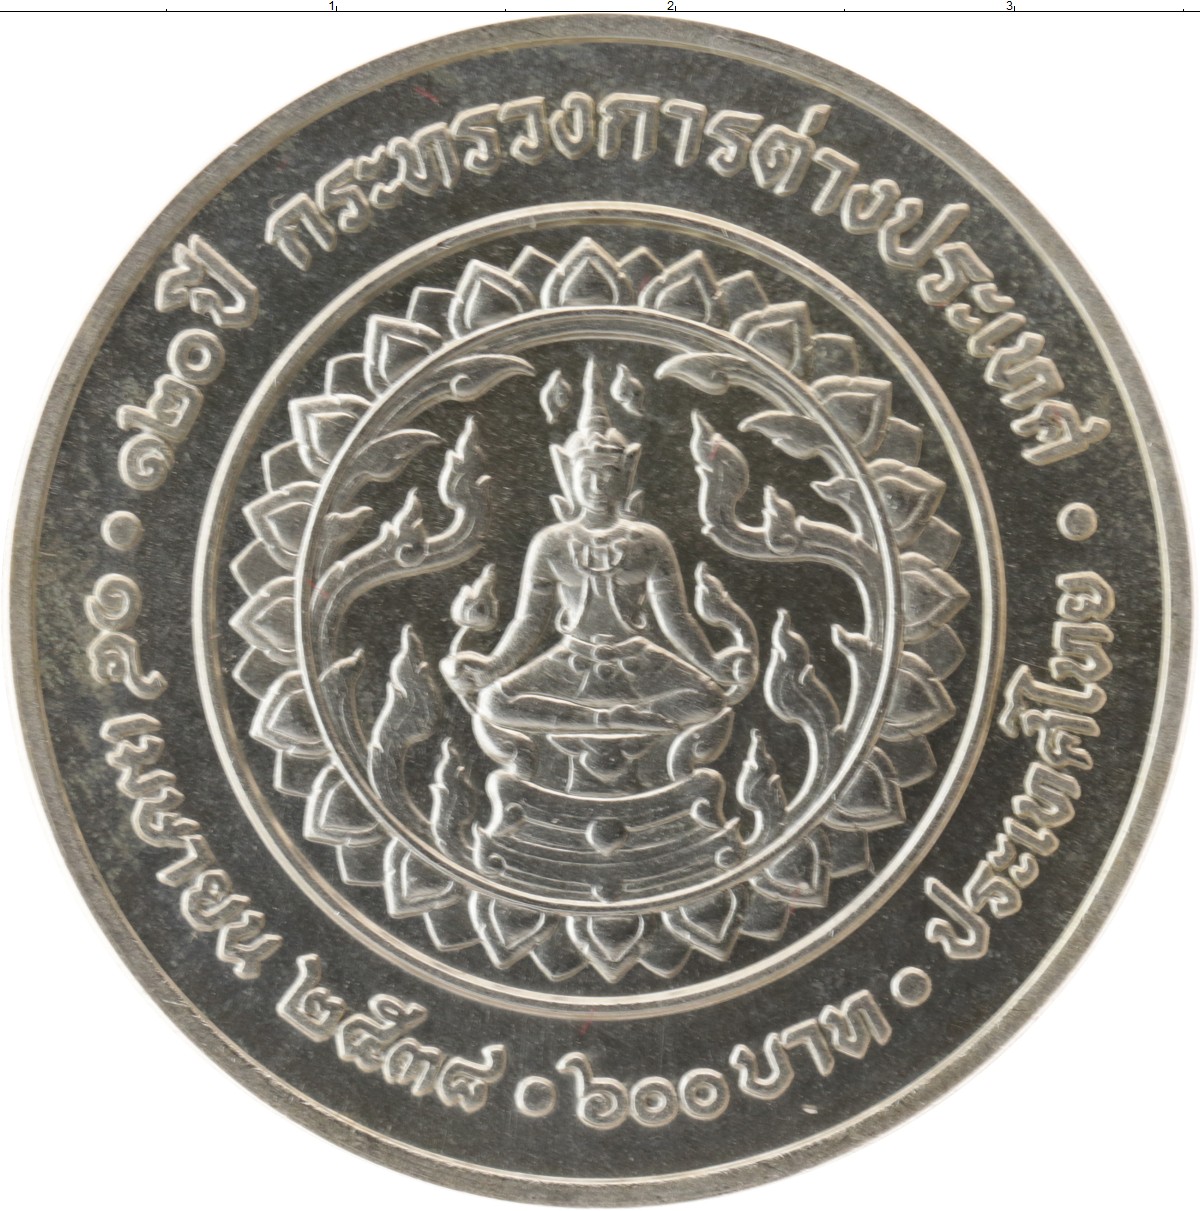 600 бат. 600 Бат Таиланд монета серебро. Год на монетах Таиланда. Цифры Таиланда на монетах. Пхукет Таиланд монеты.